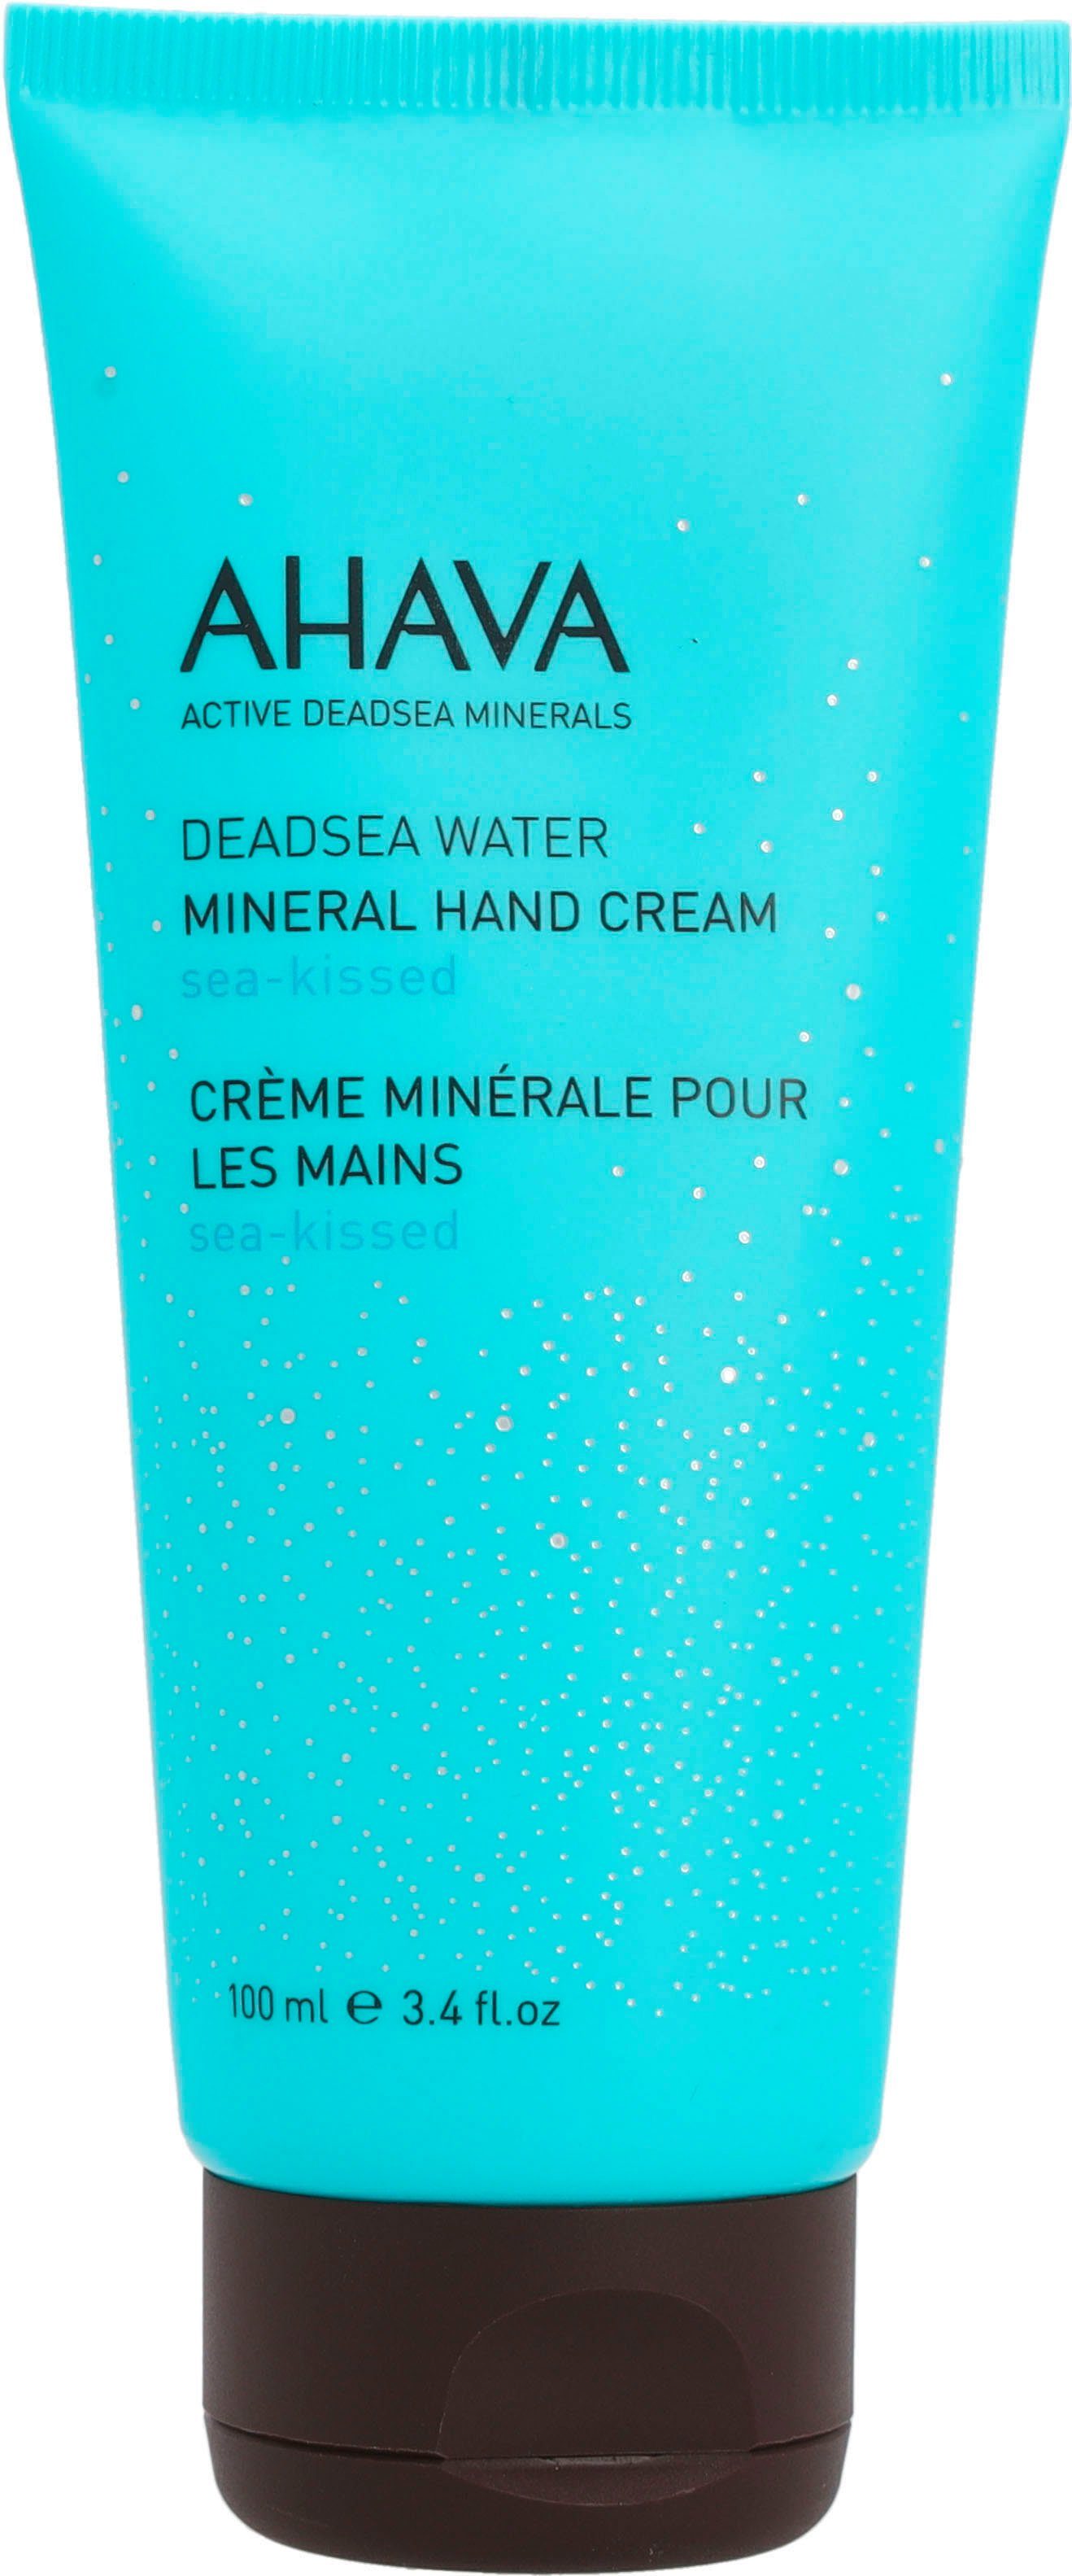 Hand Mineral Deadsea AHAVA Cream Sea-Kissed, Handcreme Water Beschreibungstext siehe